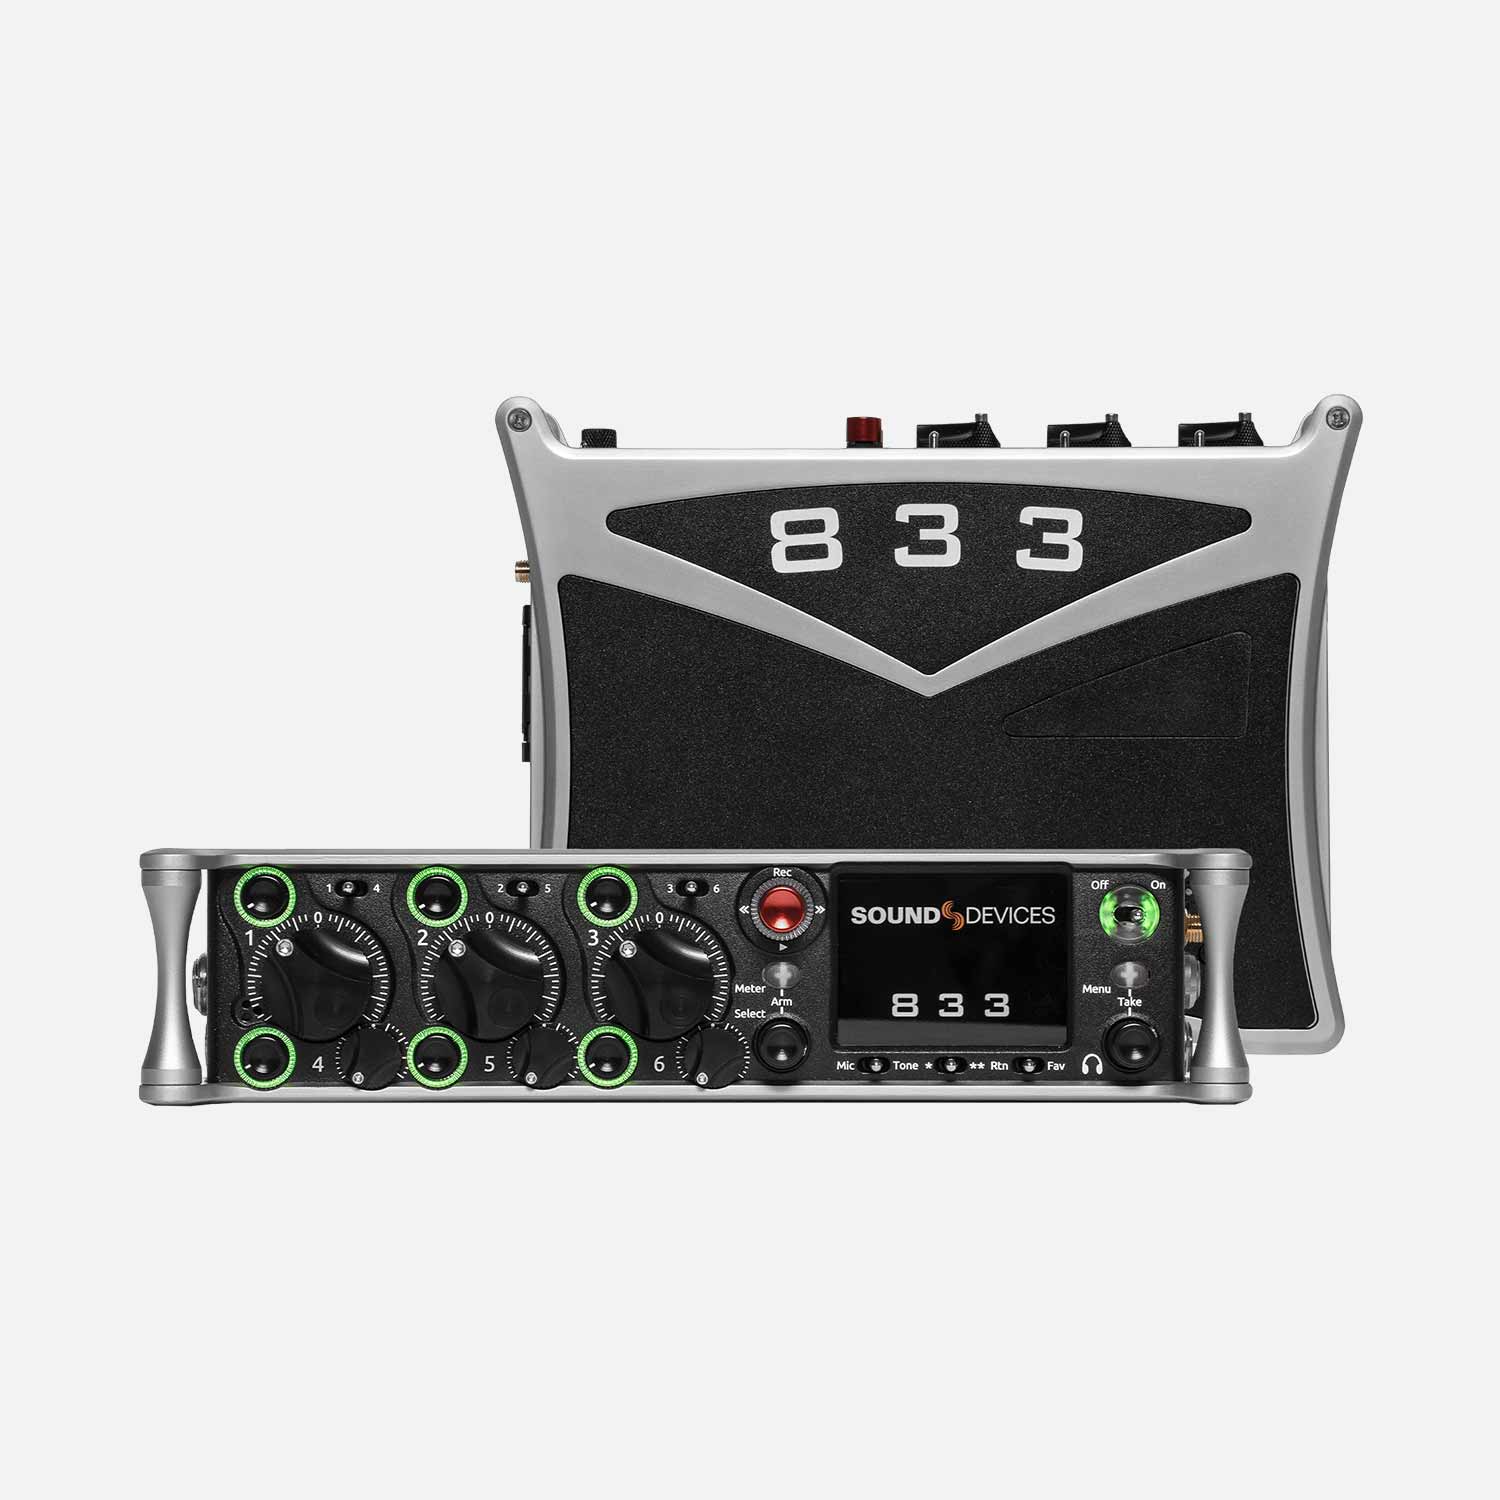 Sound Devices 833 portable compact mixer